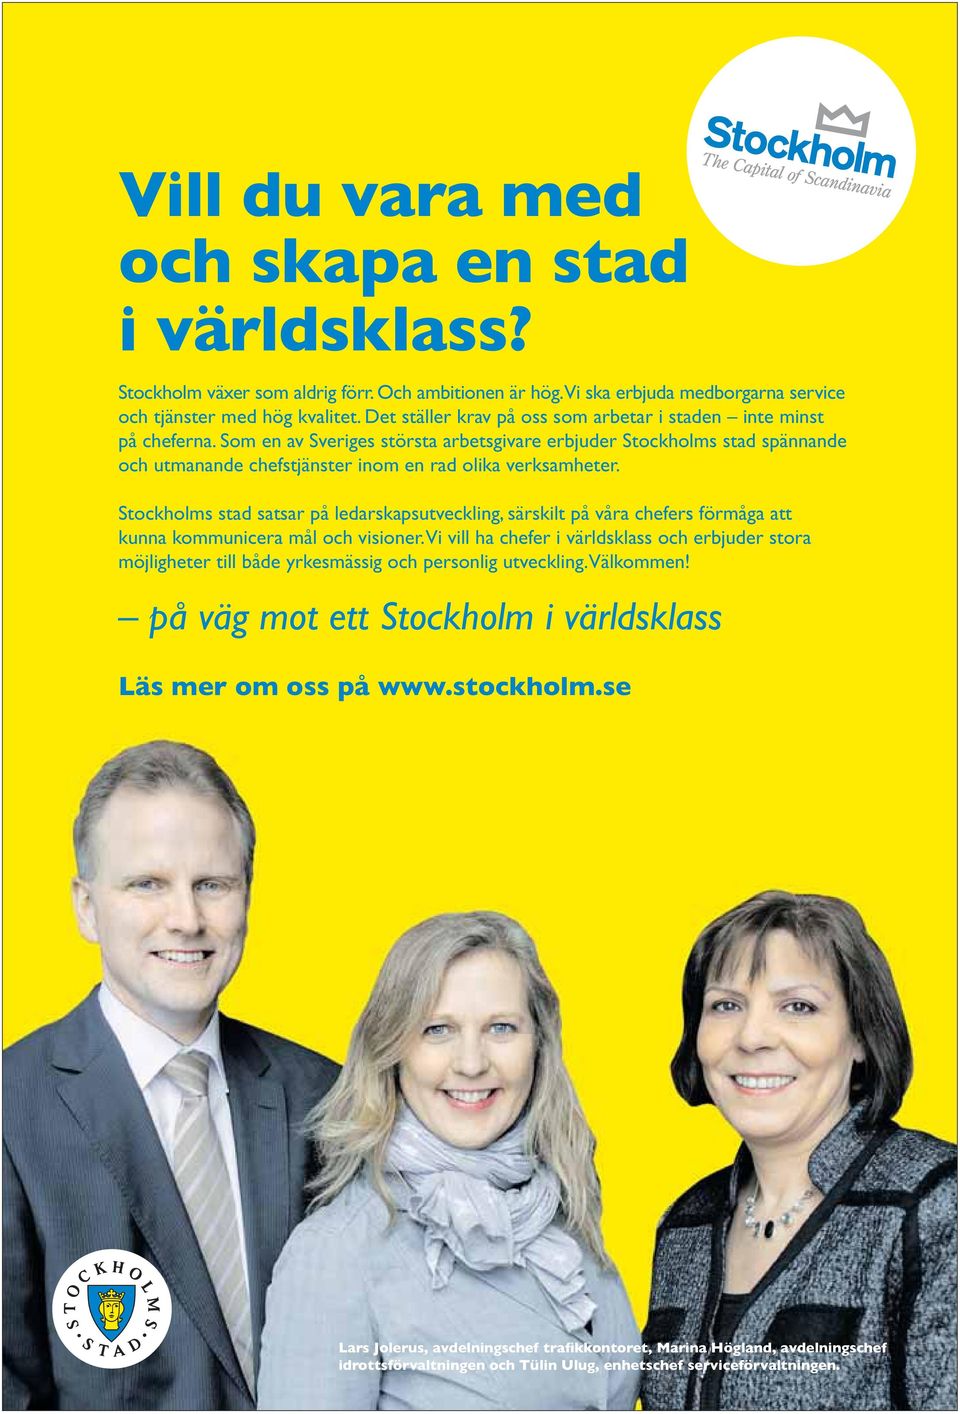 Som en av Sveriges största arbetsgivare erbjuder Stockholms stad spännande och utmanande chefstjänster inom en rad olika verksamheter.